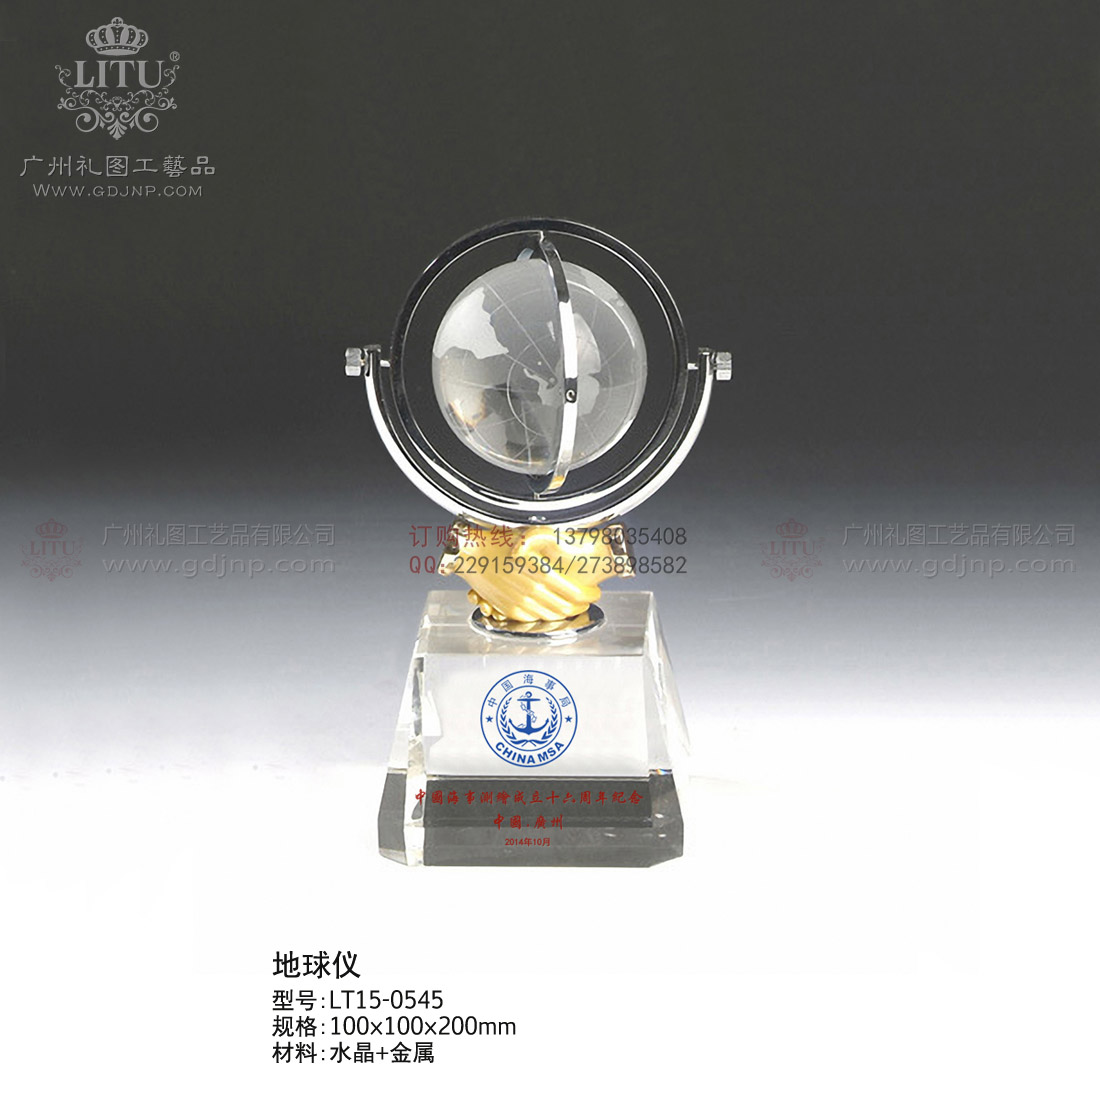 水晶地球仪、上海水晶纪念品、高档商务礼品、单位周年纪念品、居委会纪念品、广州地球仪制作公司